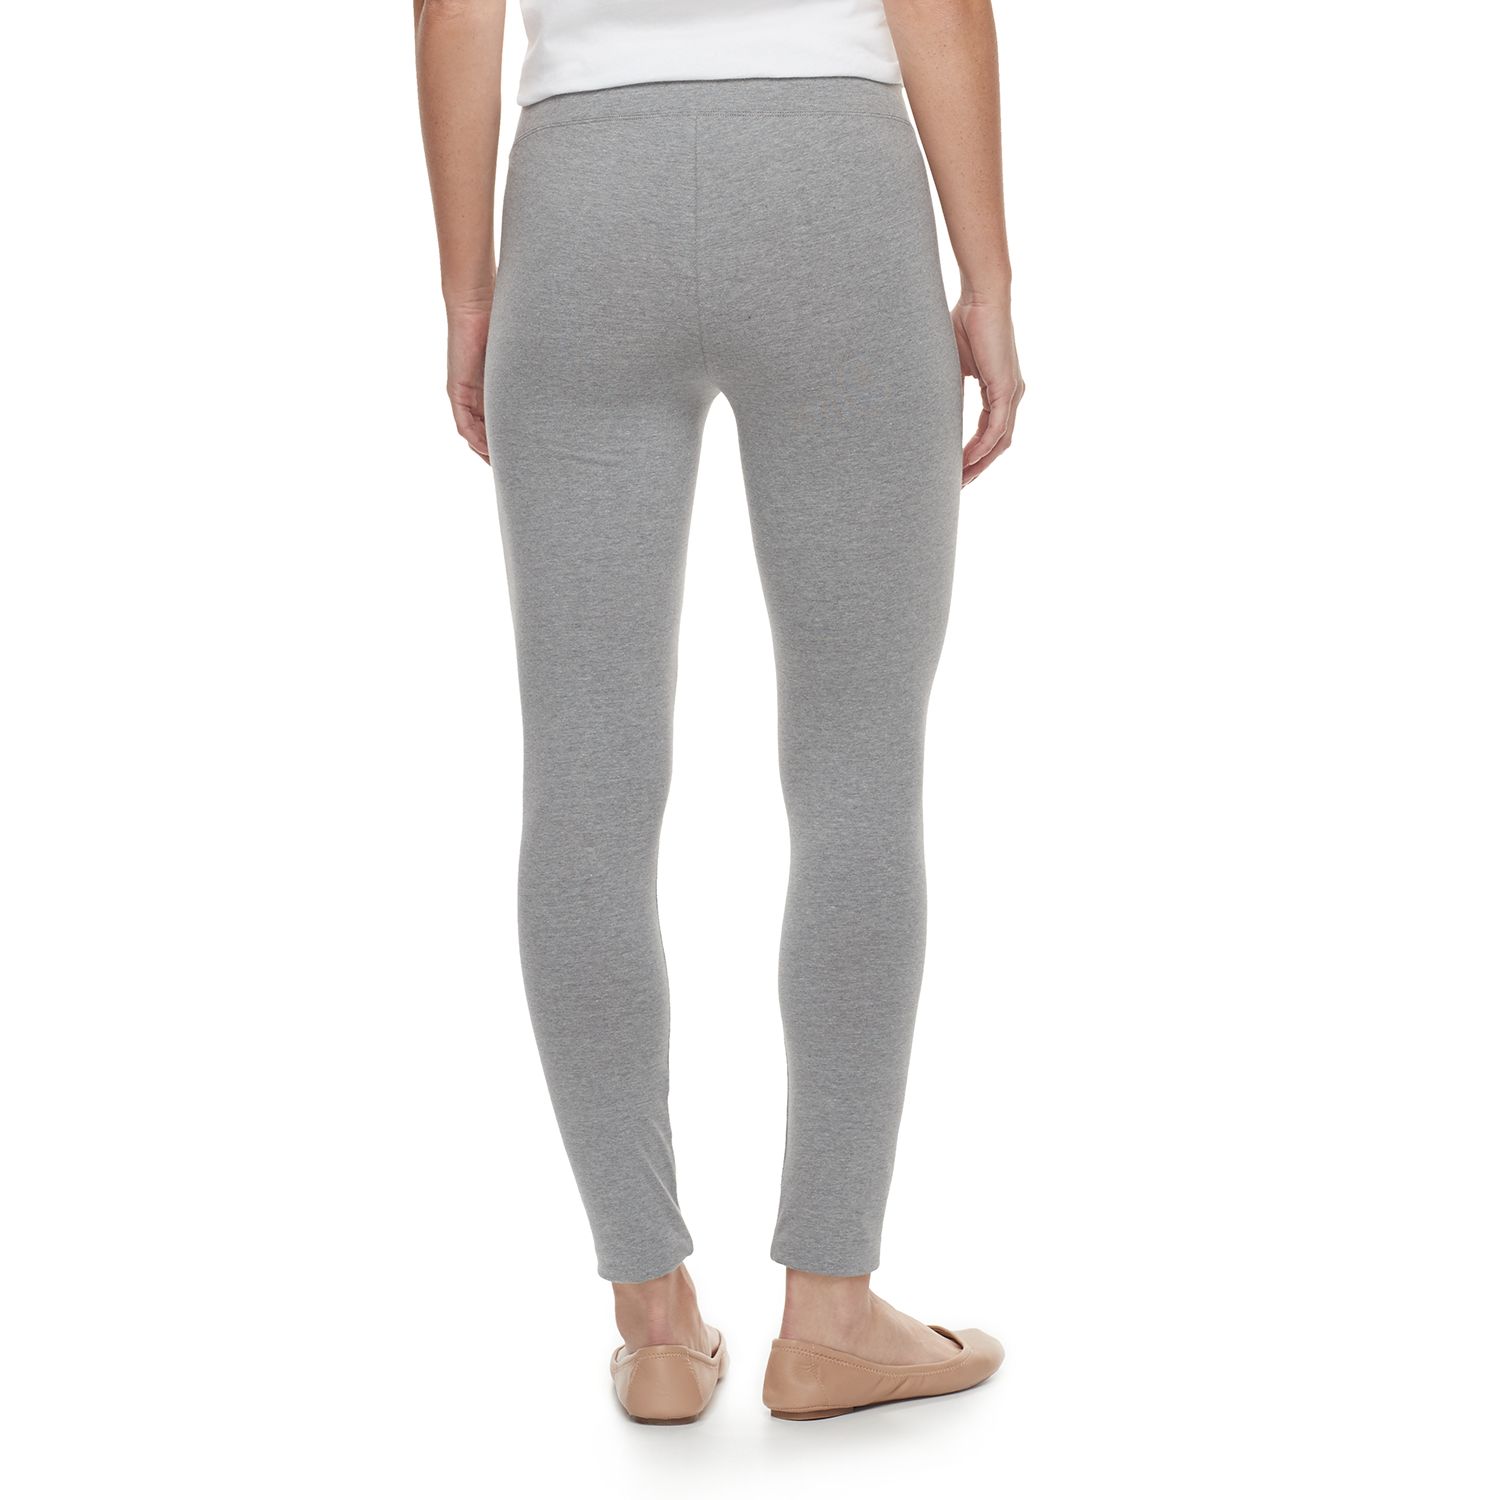 Sonoma Yoga Pants $7.99 at Kohl's (Reg $20)